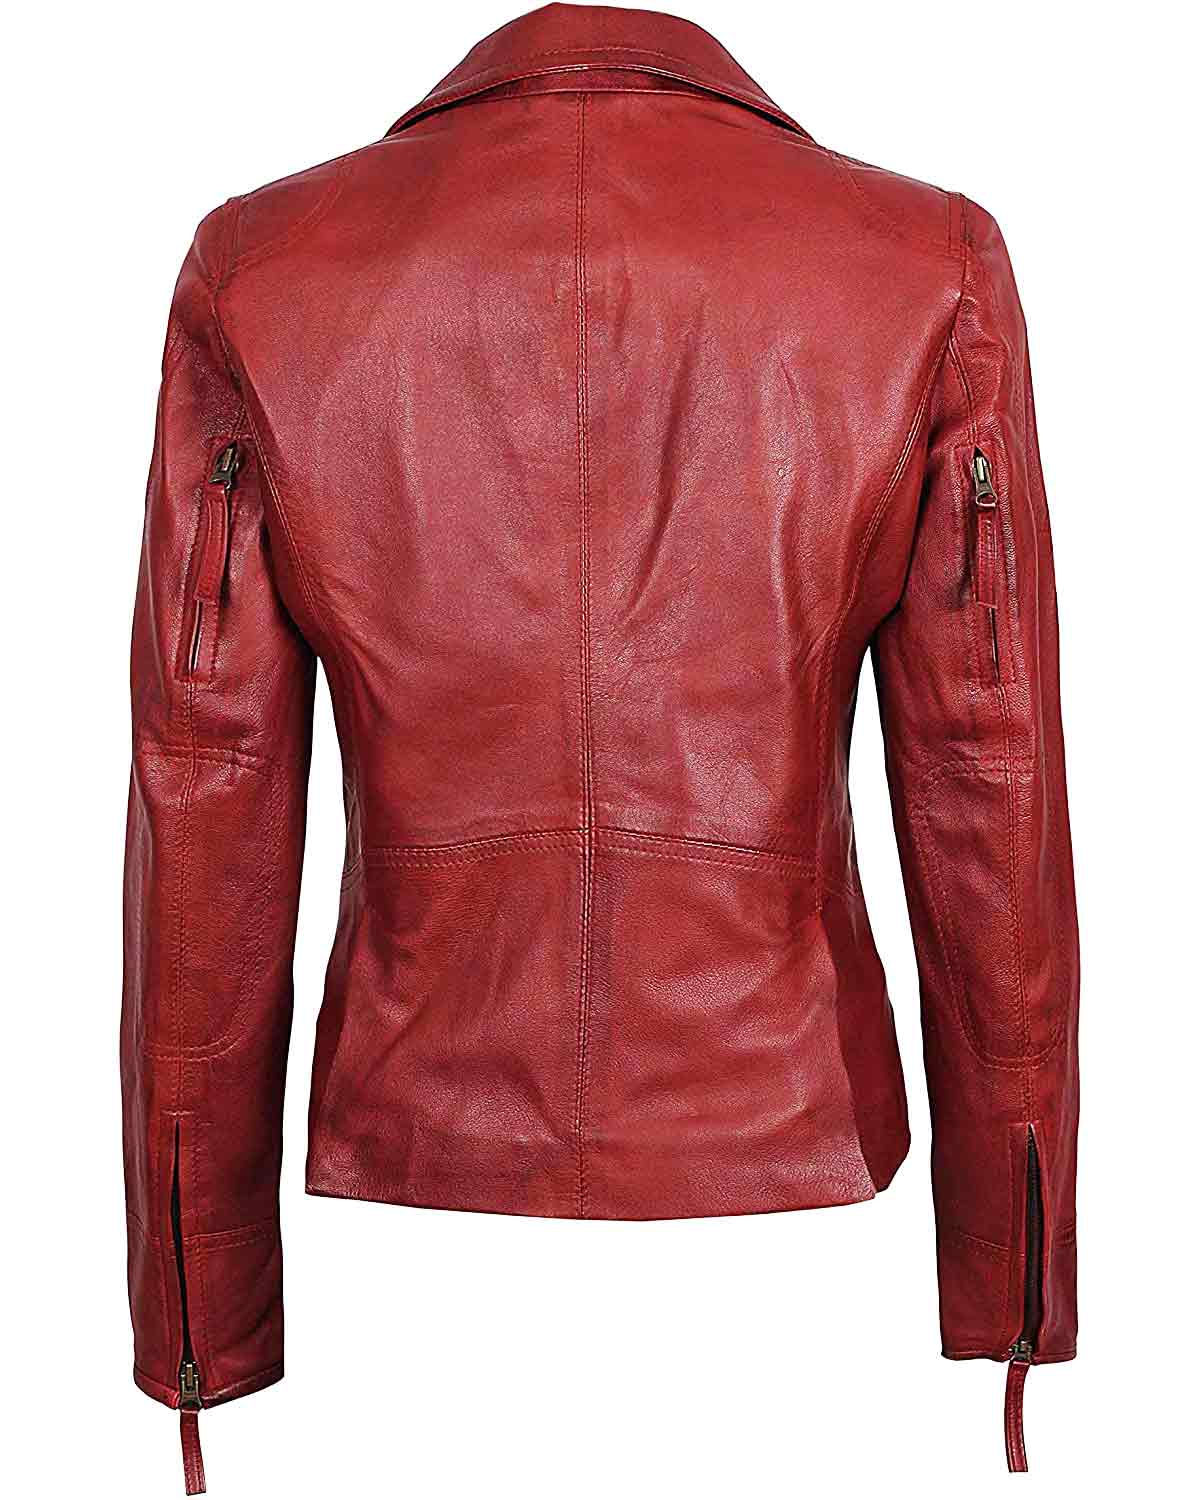 MotorCycleJackets Women's Maroon Genuine Leather Jacket